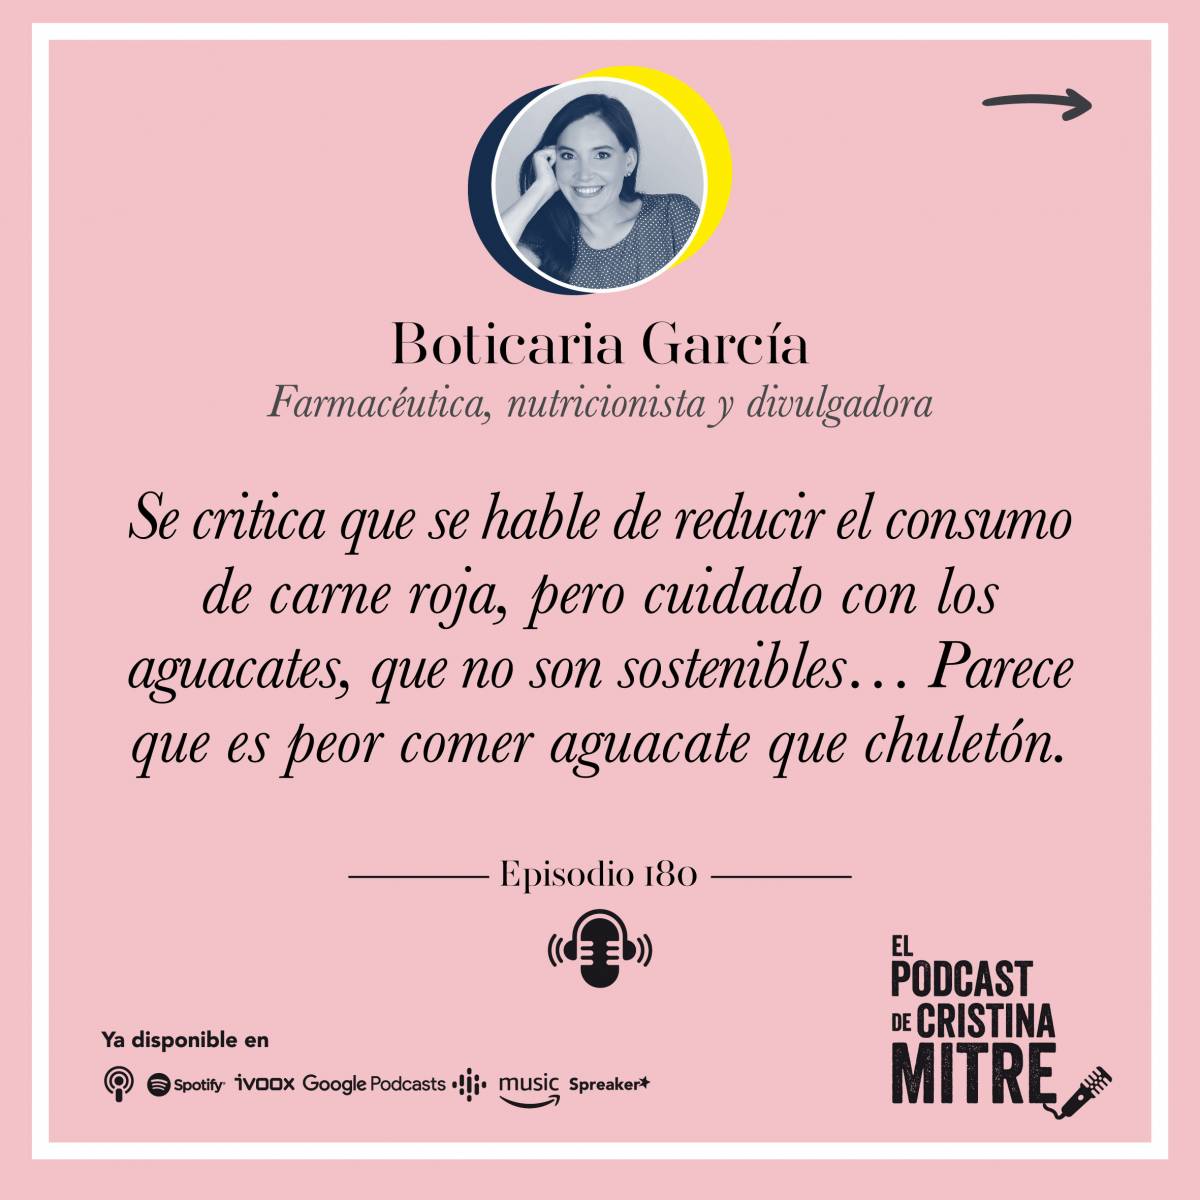 El Podcast de Cristina Mitre Boticaria García carne